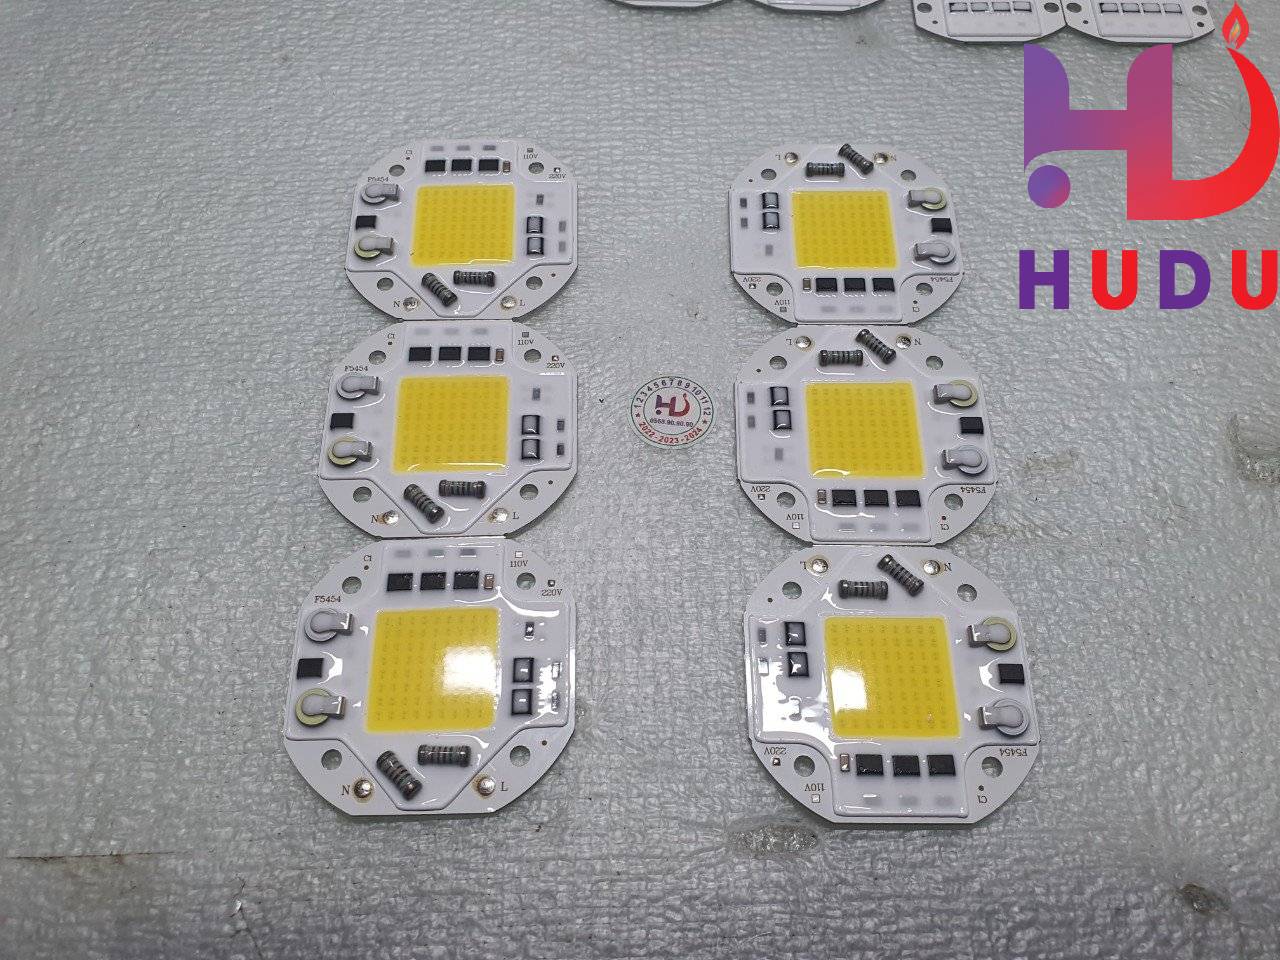 Linh kiện Hudu cung cấp chip bóng Led 50W-220V ánh sáng trắng đế nhôm vuông (54*54mm)  đảm bảo chất lượng tốt